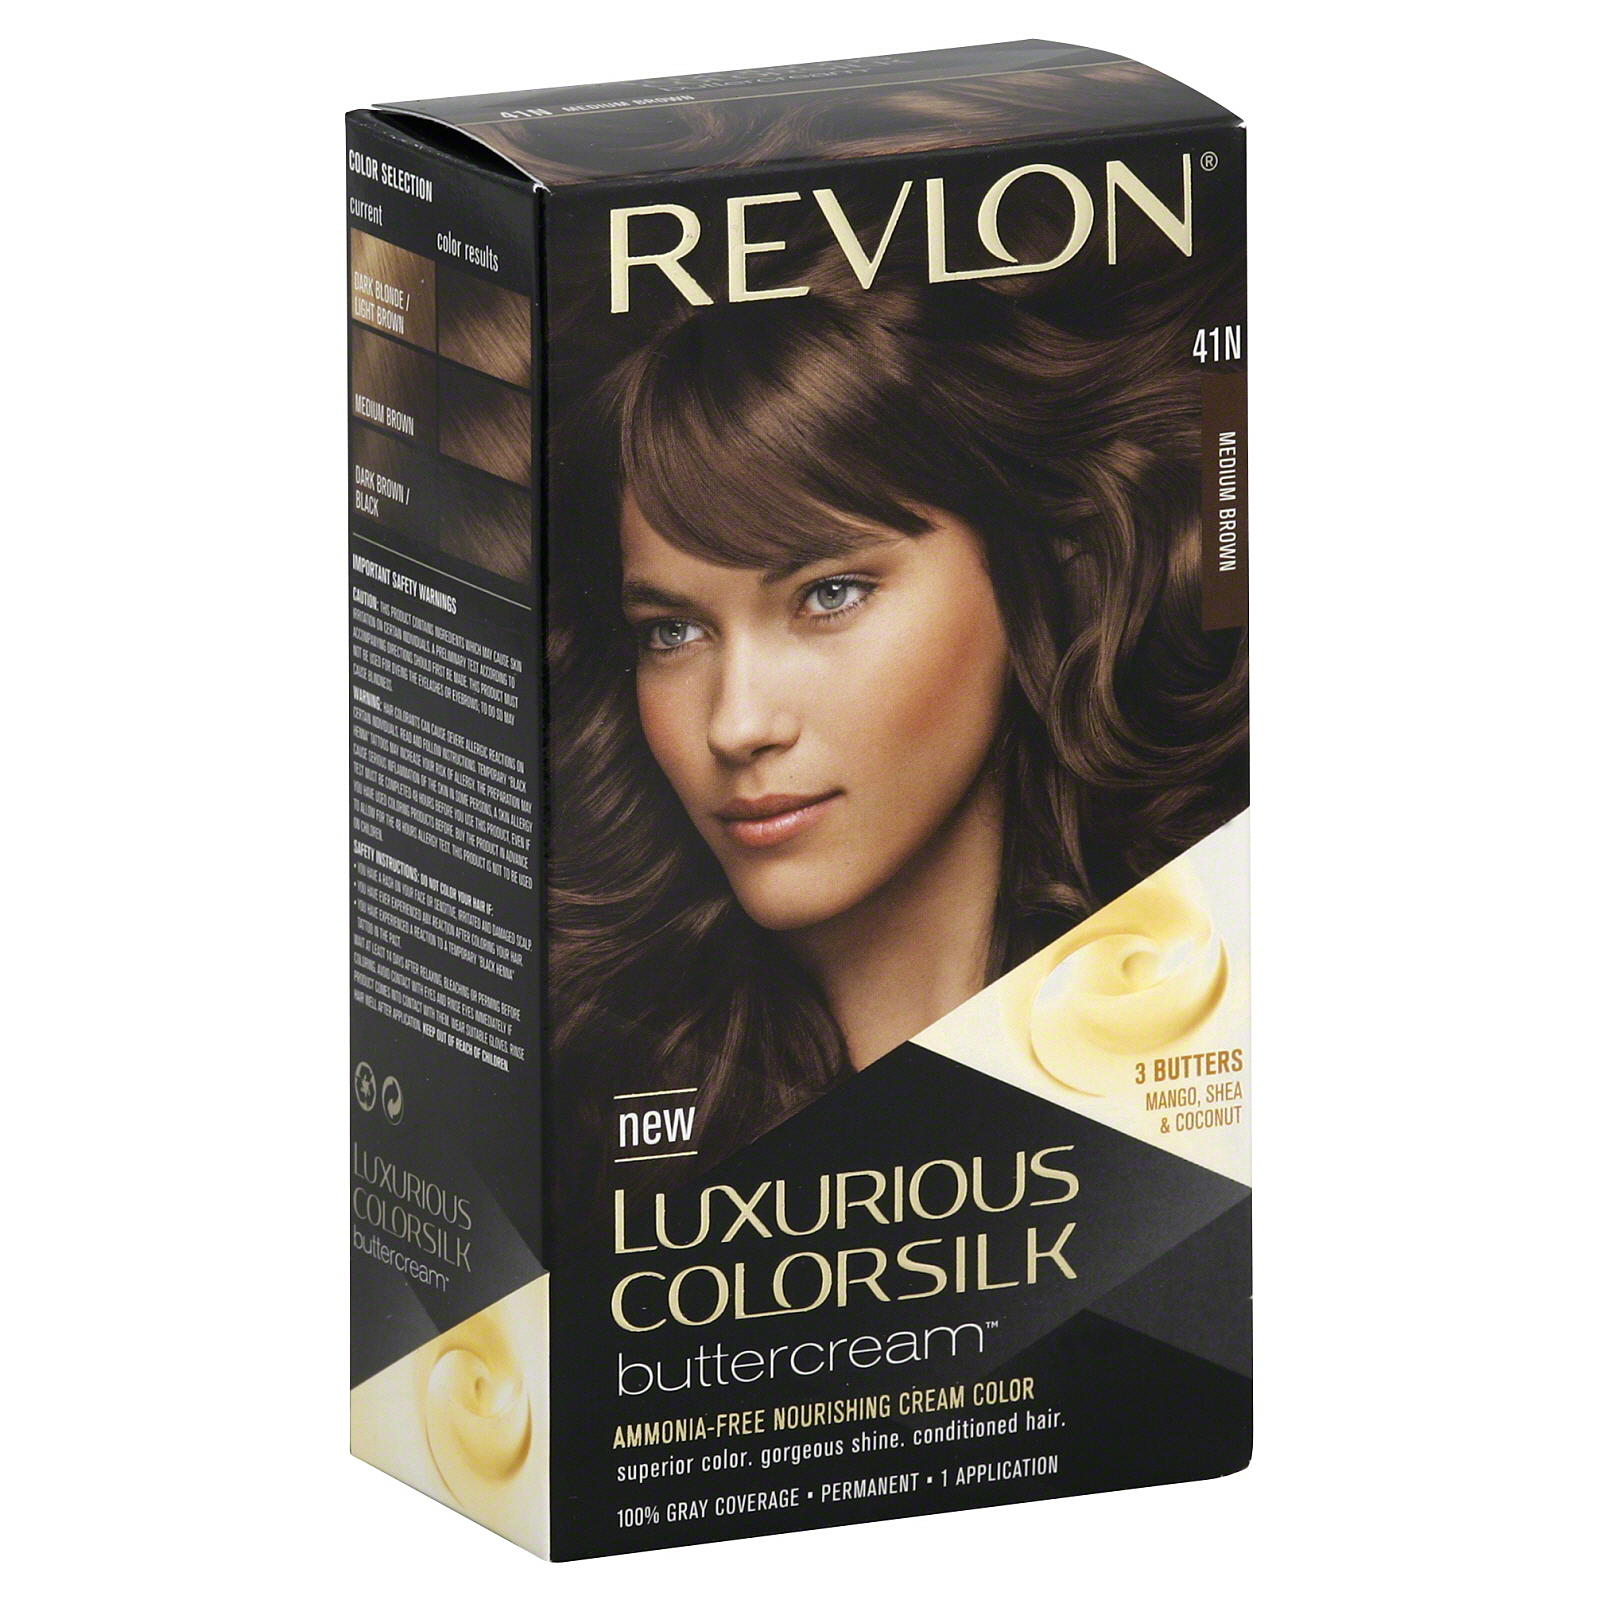 Revlon Luxurious ColorSilk Buttercream Permanent Hair Color